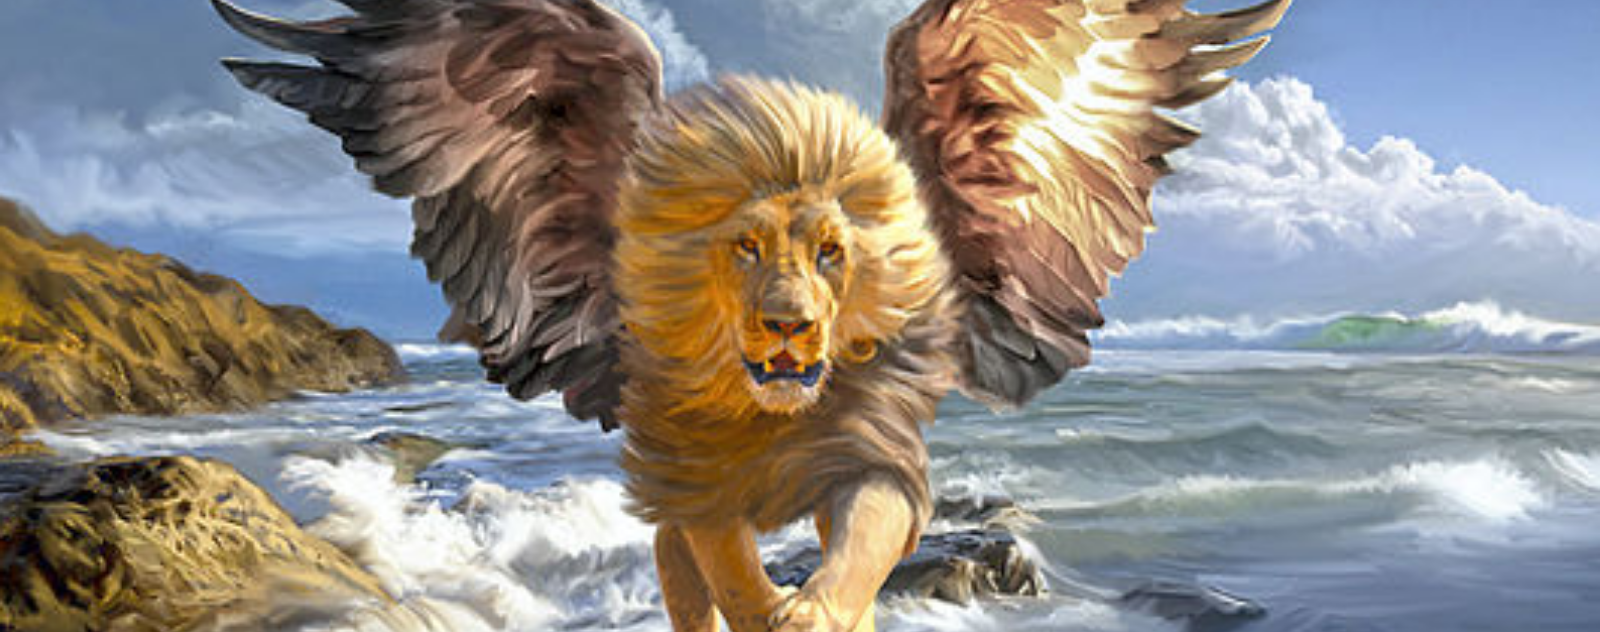 daniel's lion